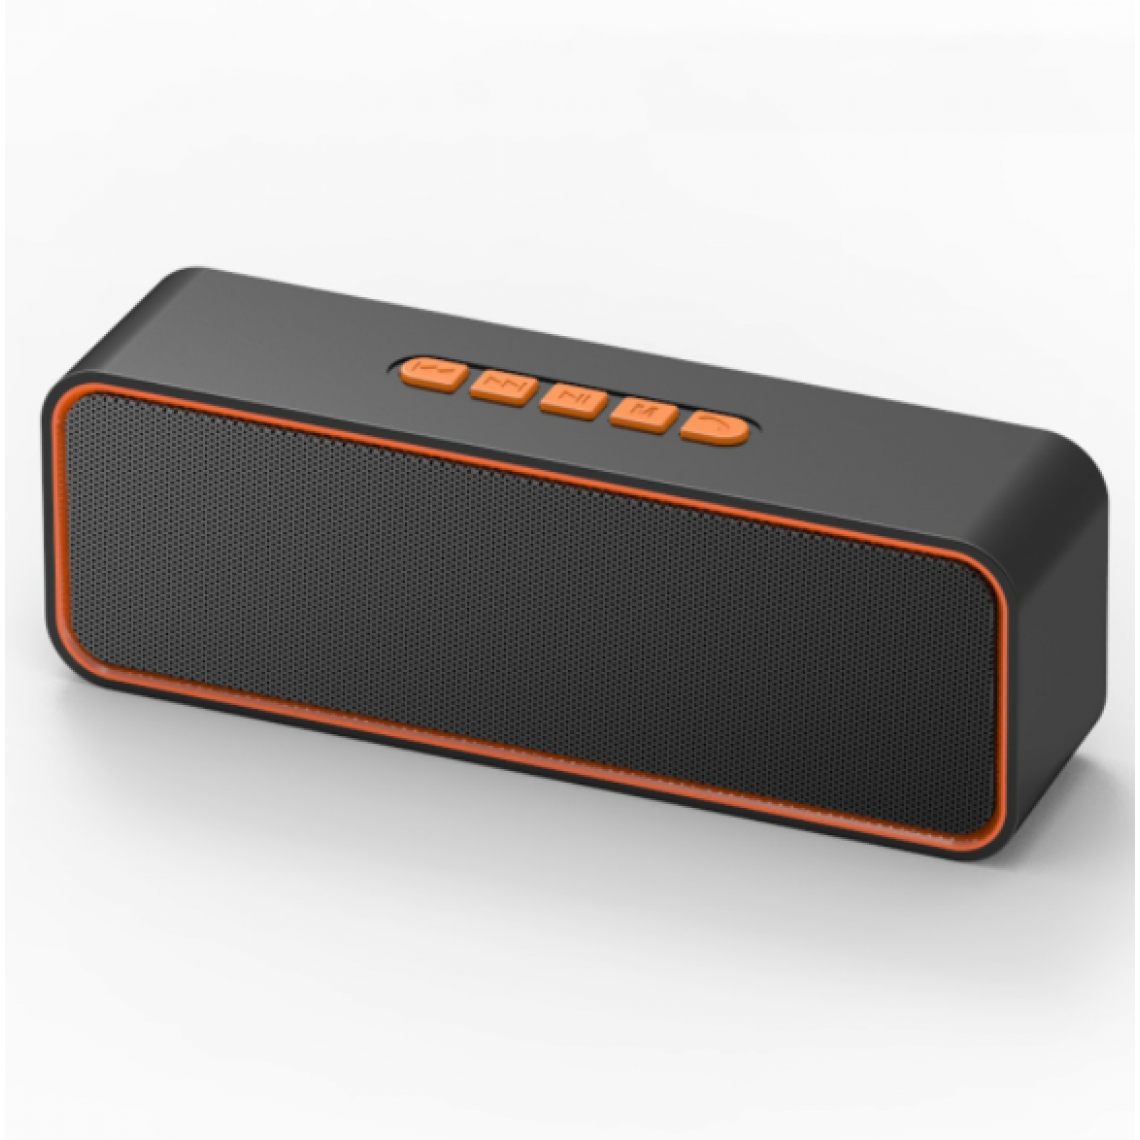 Chrono - Haut-parleur Bluetooth sans fil, haut-parleur portable Bluetooth 5.0, avec double basse, stéréo 3D, radio FM, fonction mains libres, batterie intégrée de 1500 mAh, 16 heures de lecture(Orange) - Enceintes Hifi